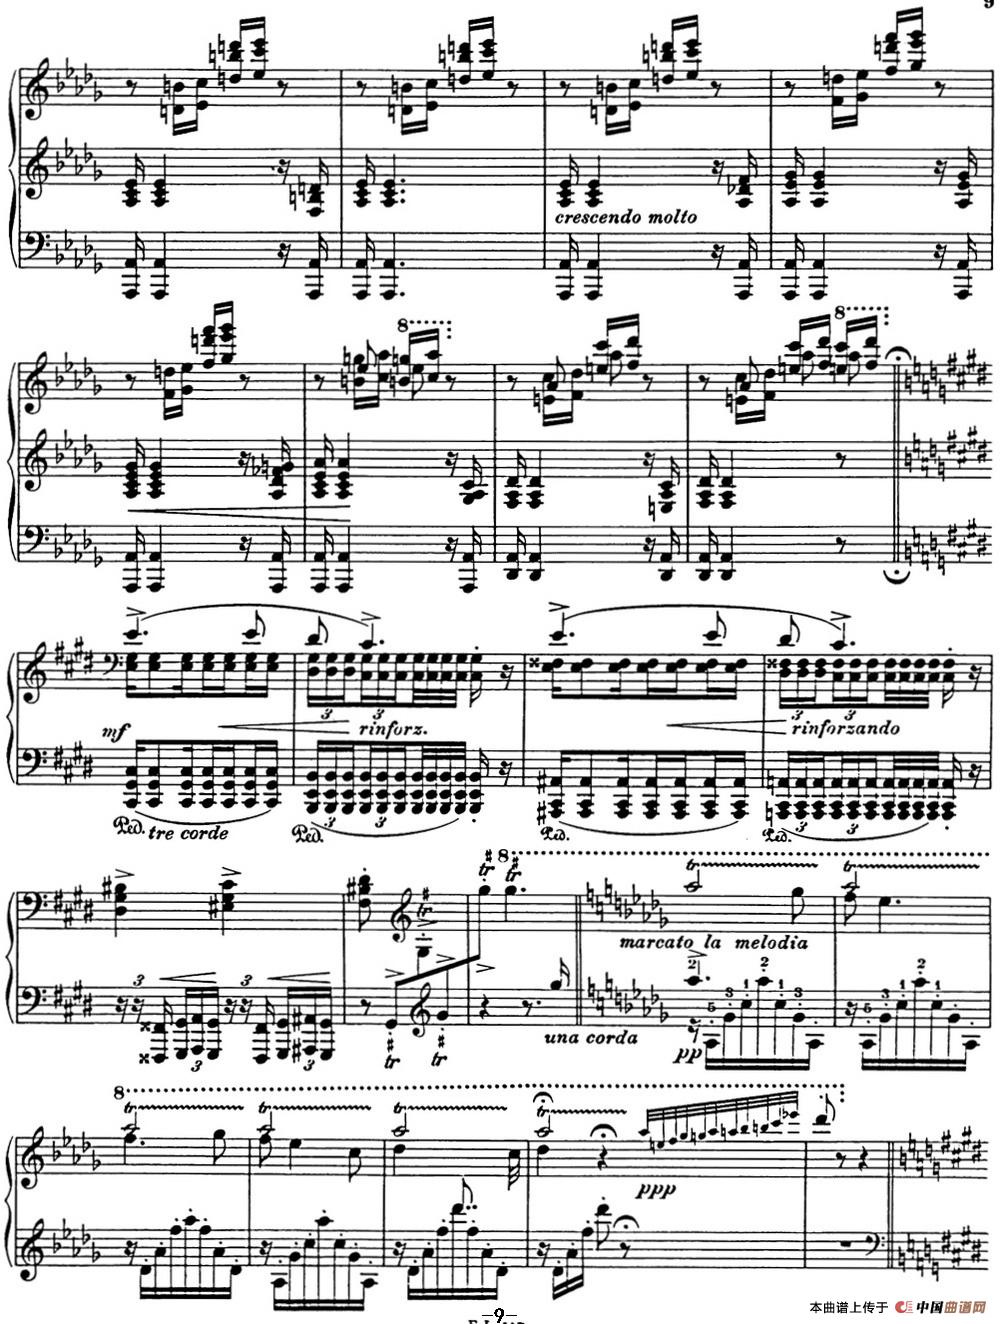 《李斯特 匈牙利狂想曲 Hungarian Rhapsodies S.244 No.1》钢琴曲谱图分享